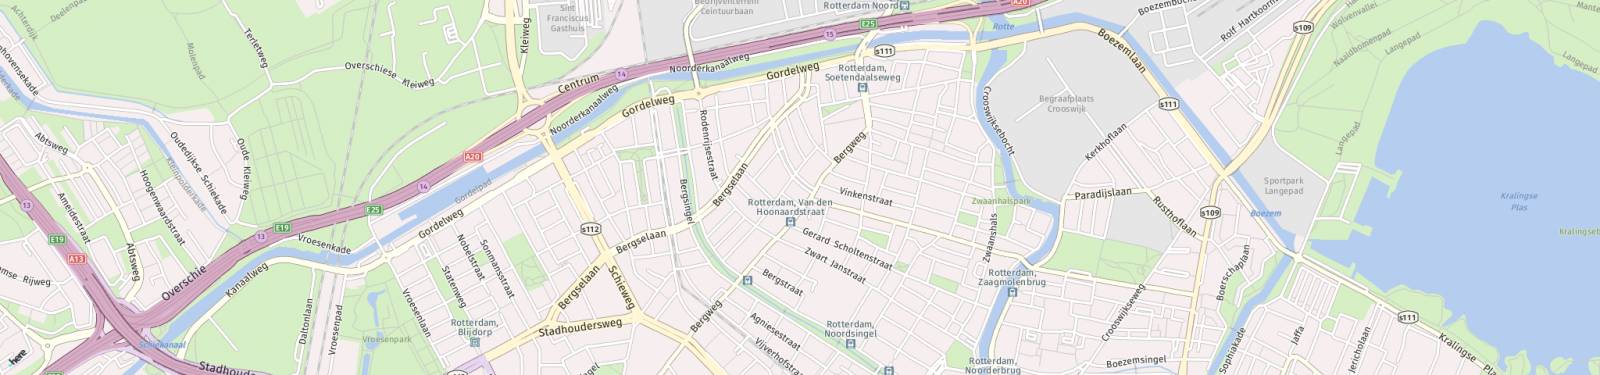 Kaart met locatie Huurwoning Schiebroekselaan